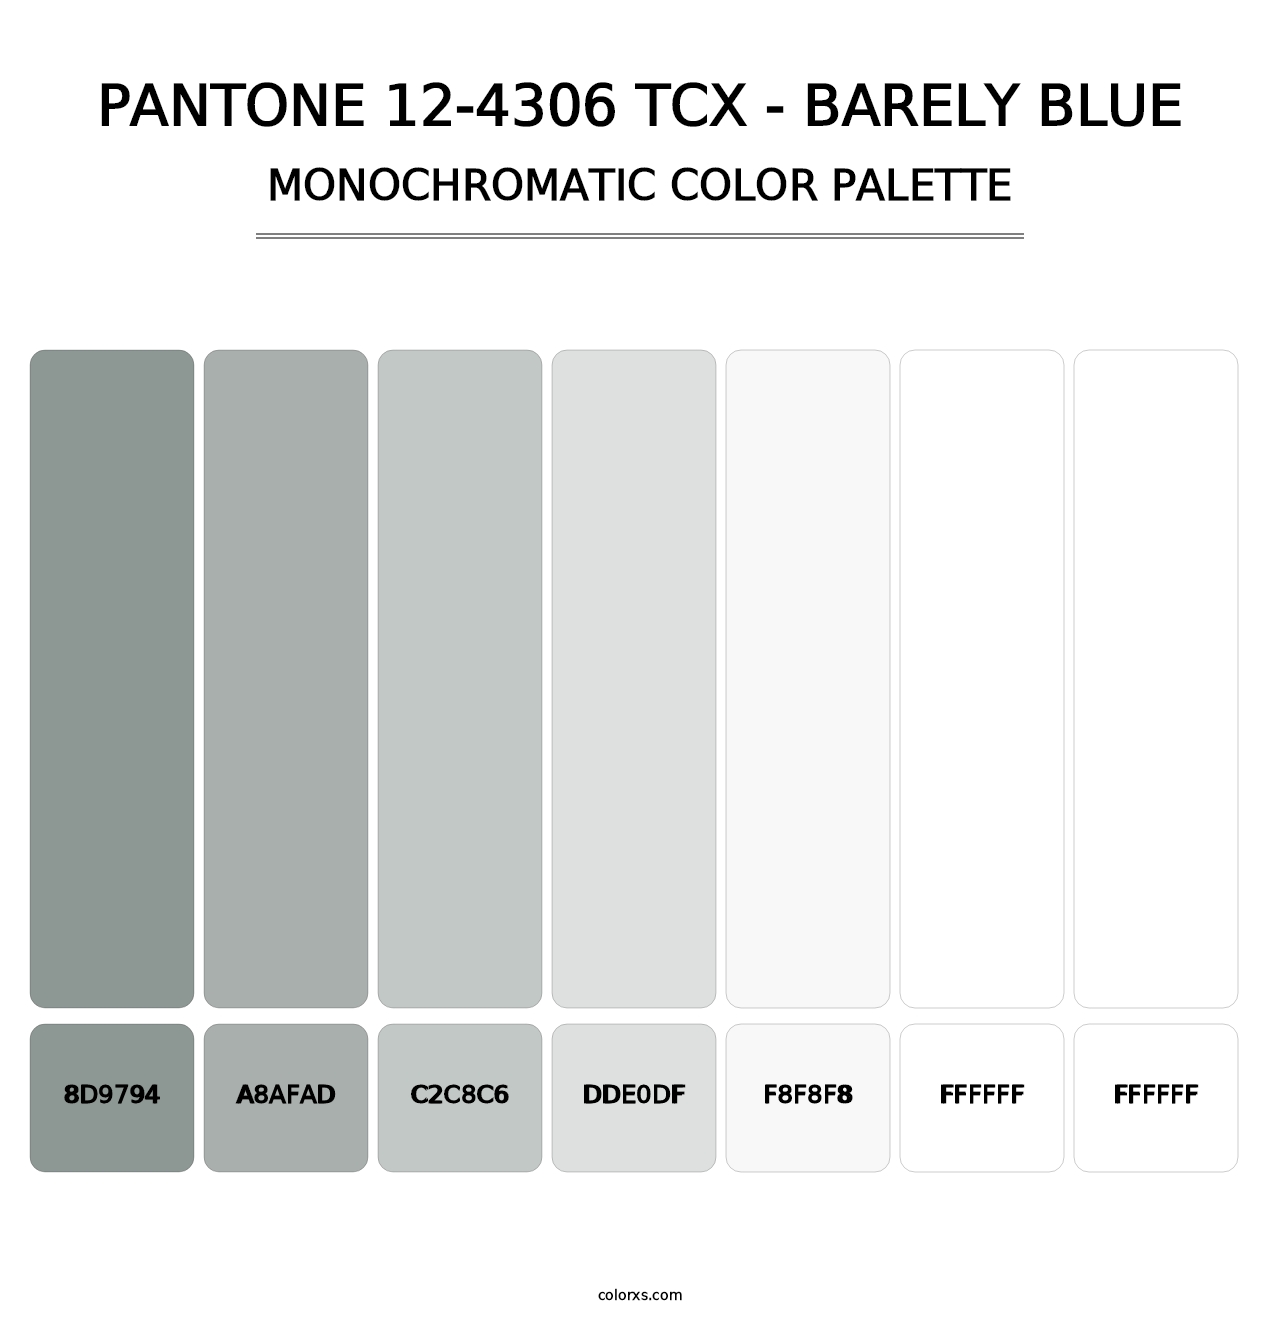 PANTONE 12-4306 TCX - Barely Blue - Monochromatic Color Palette